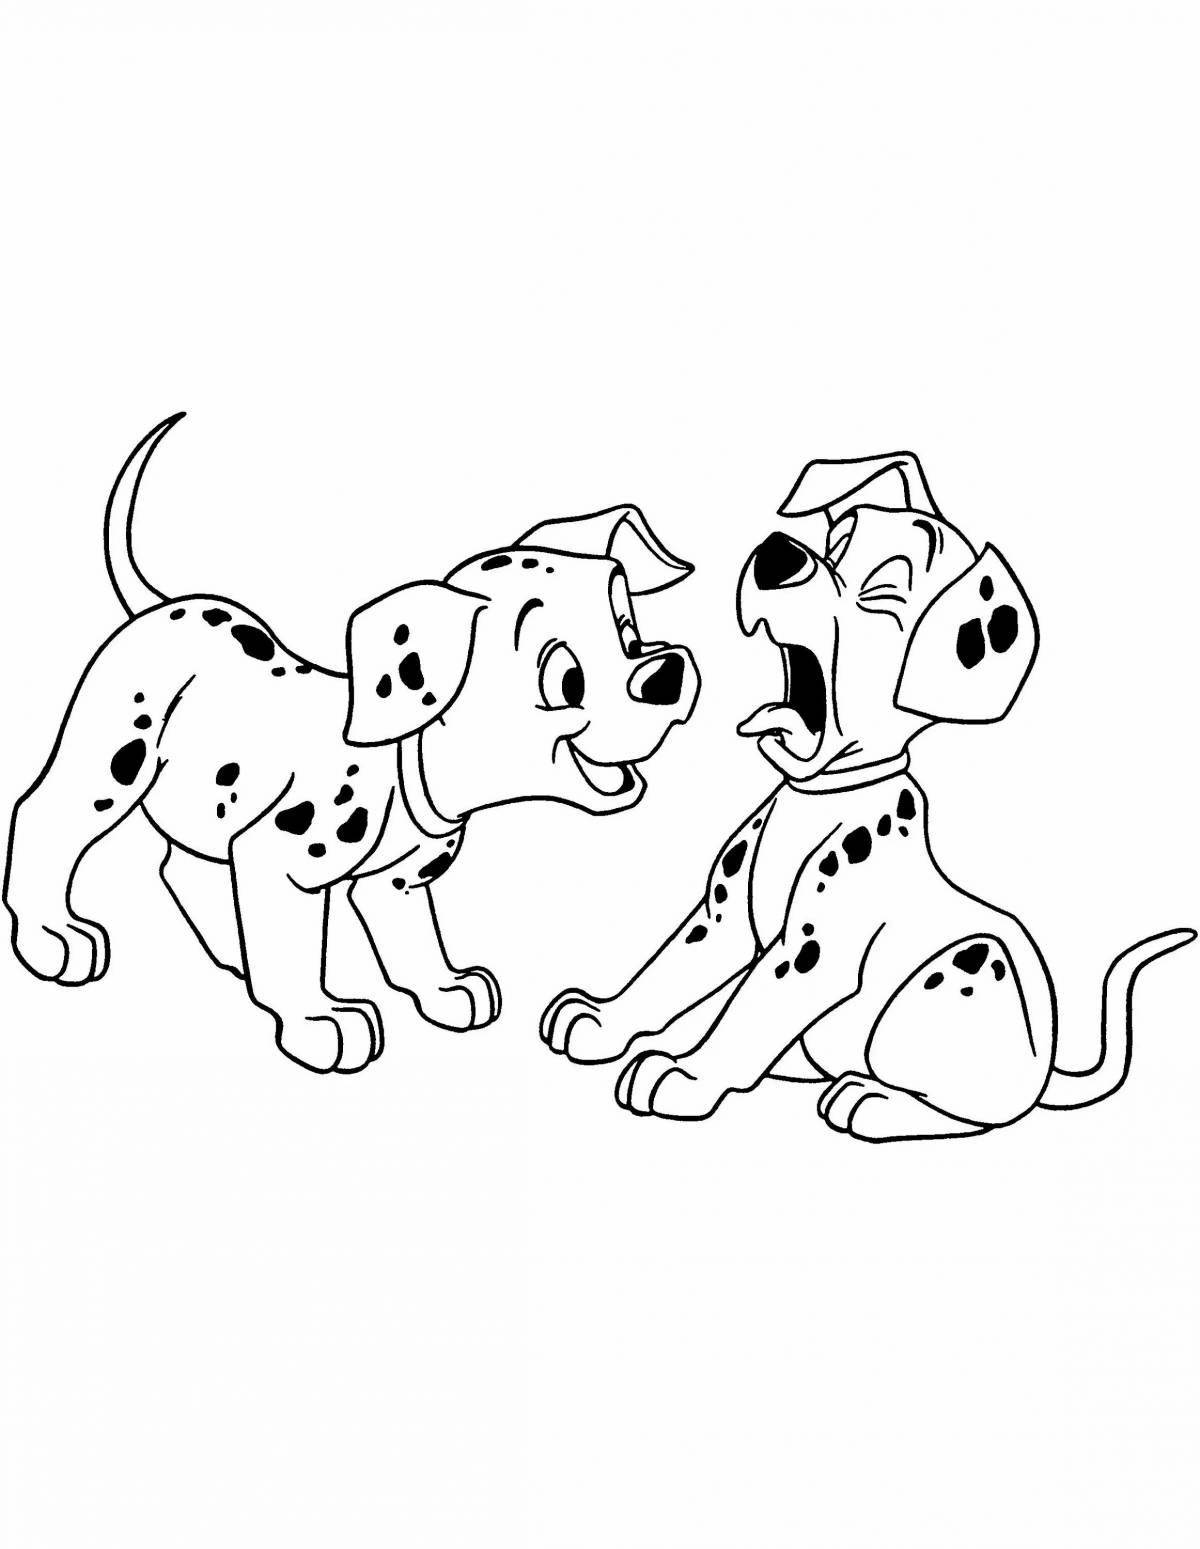 Анимированная далматинская собака-раскраска